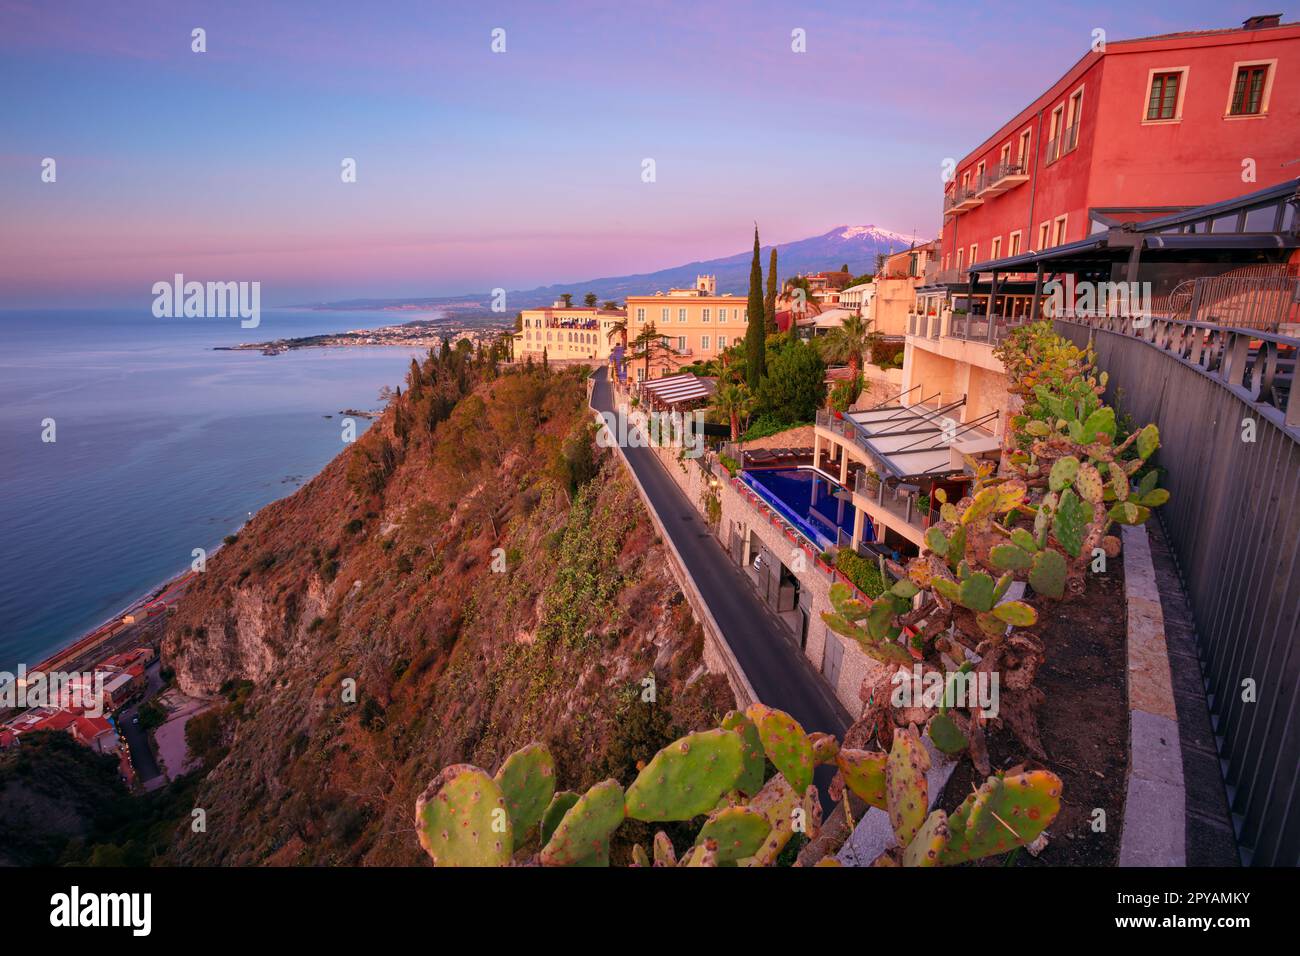 Taormina, Sicilia, Italia. Immagine del paesaggio urbano della pittoresca città di Taormina, Sicilia con il vulcano Mt. Etna sullo sfondo all'alba. Foto Stock